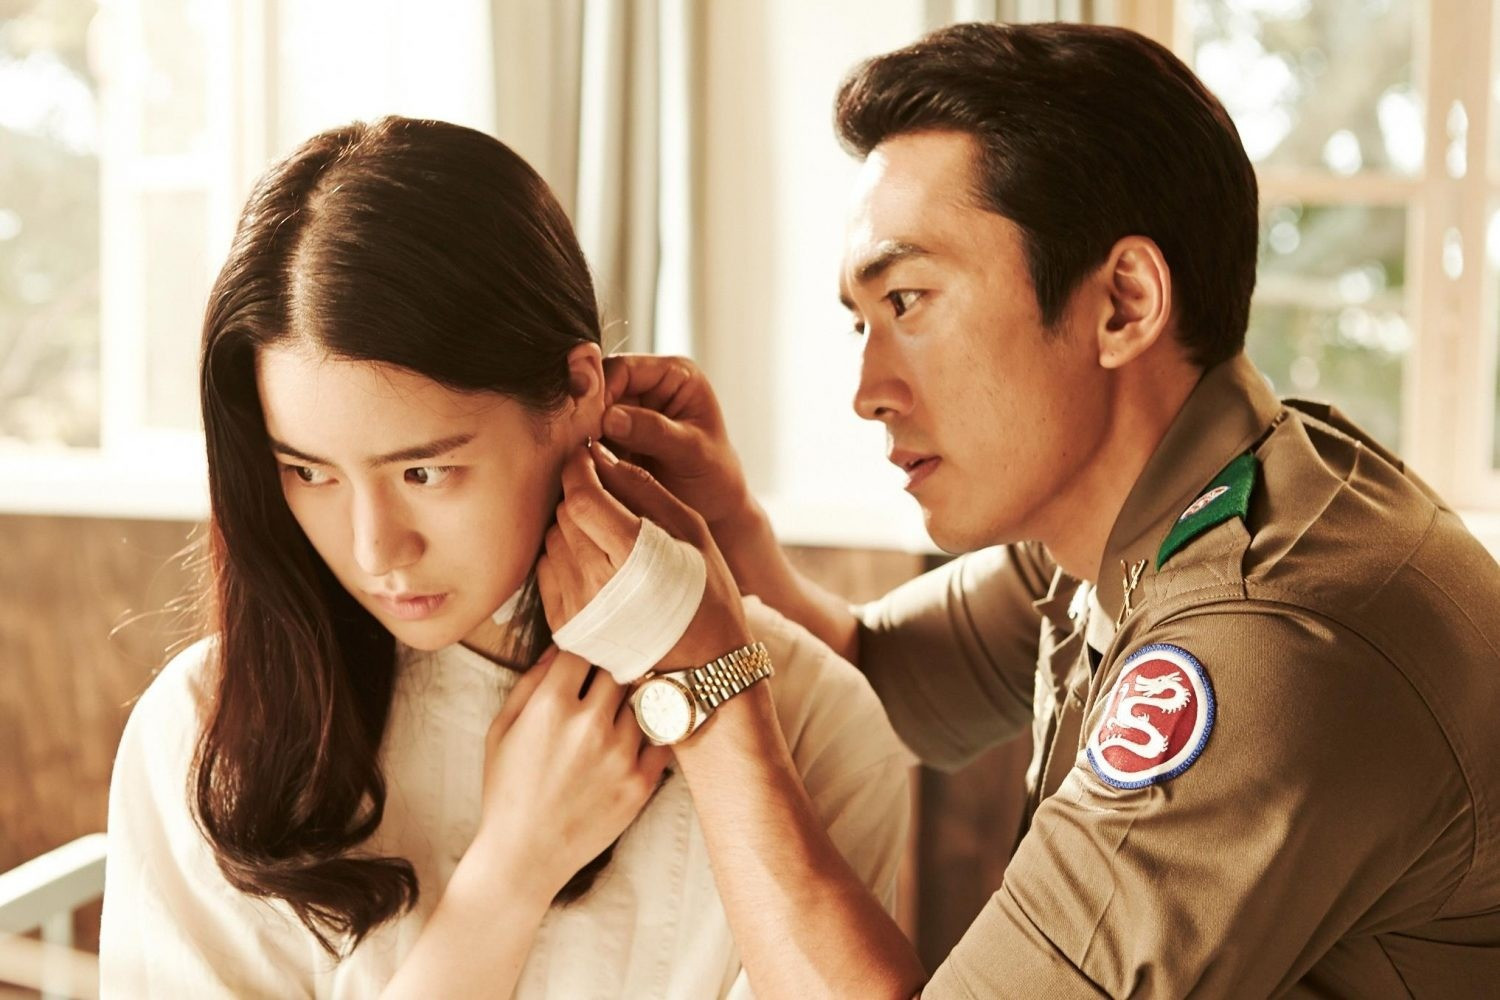 Lim Ji Yeon 'Vinh quang trong hận thù' thay đổi vận mệnh nhờ vai diễn 18+